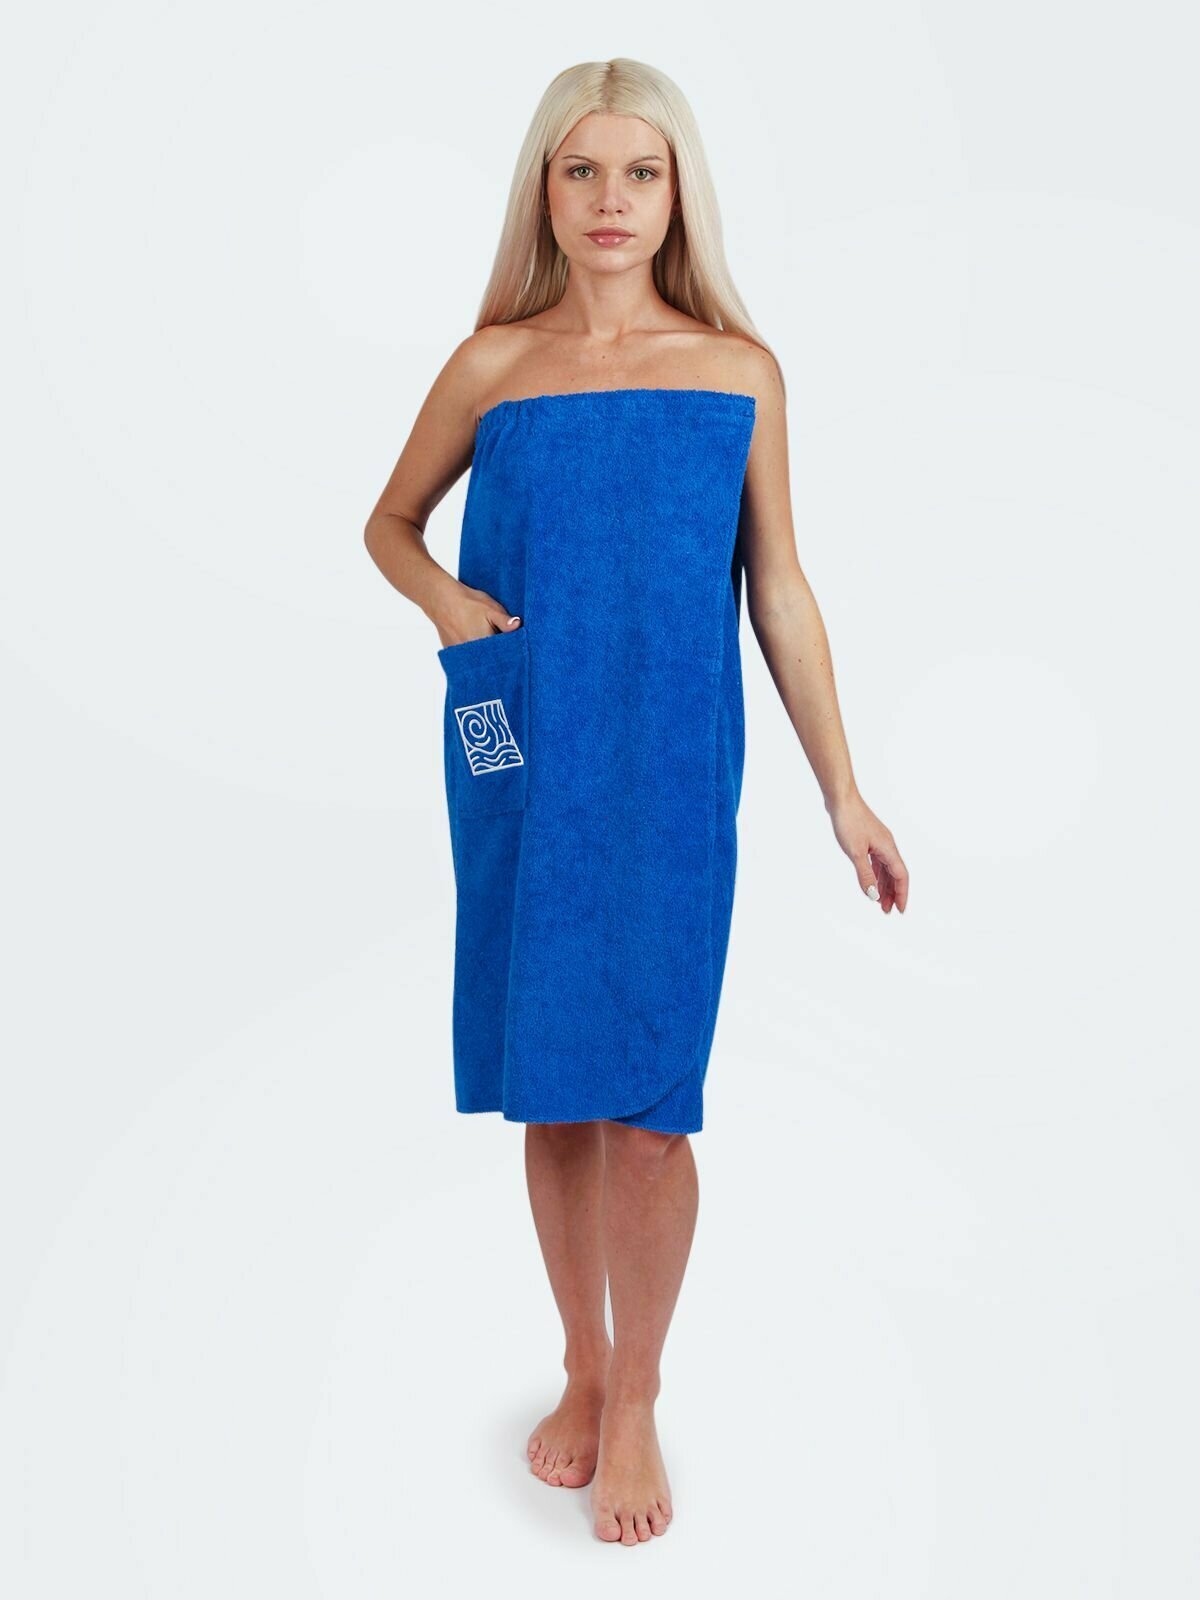 Парео/накидка для бани женская с фирменной вышивкой VALENOK BLUE, 100% хлопок, двухсторонняя махра 400 гр, усиленная липучка, 150х80 см